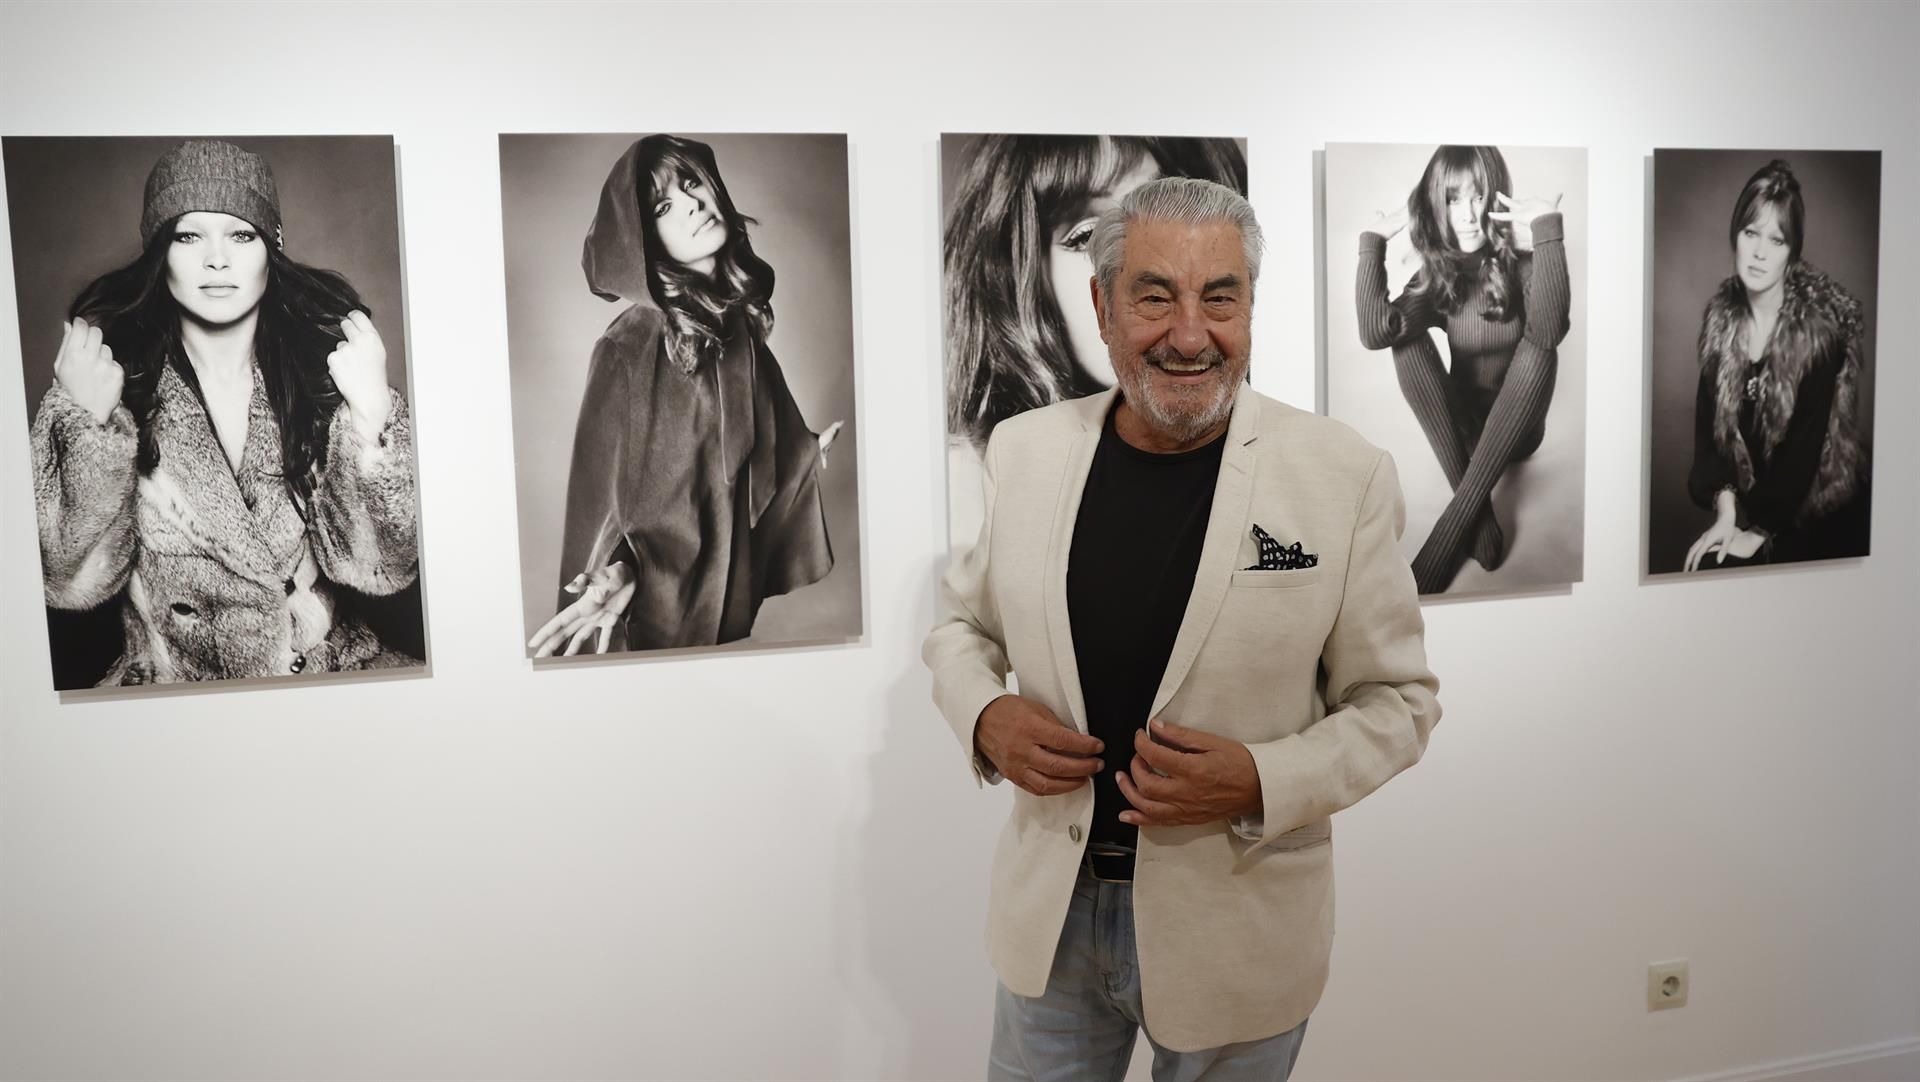 El fotógrafo César Lucas posa este miércoles junto a las imágenes de la actriz y cantante Marisol